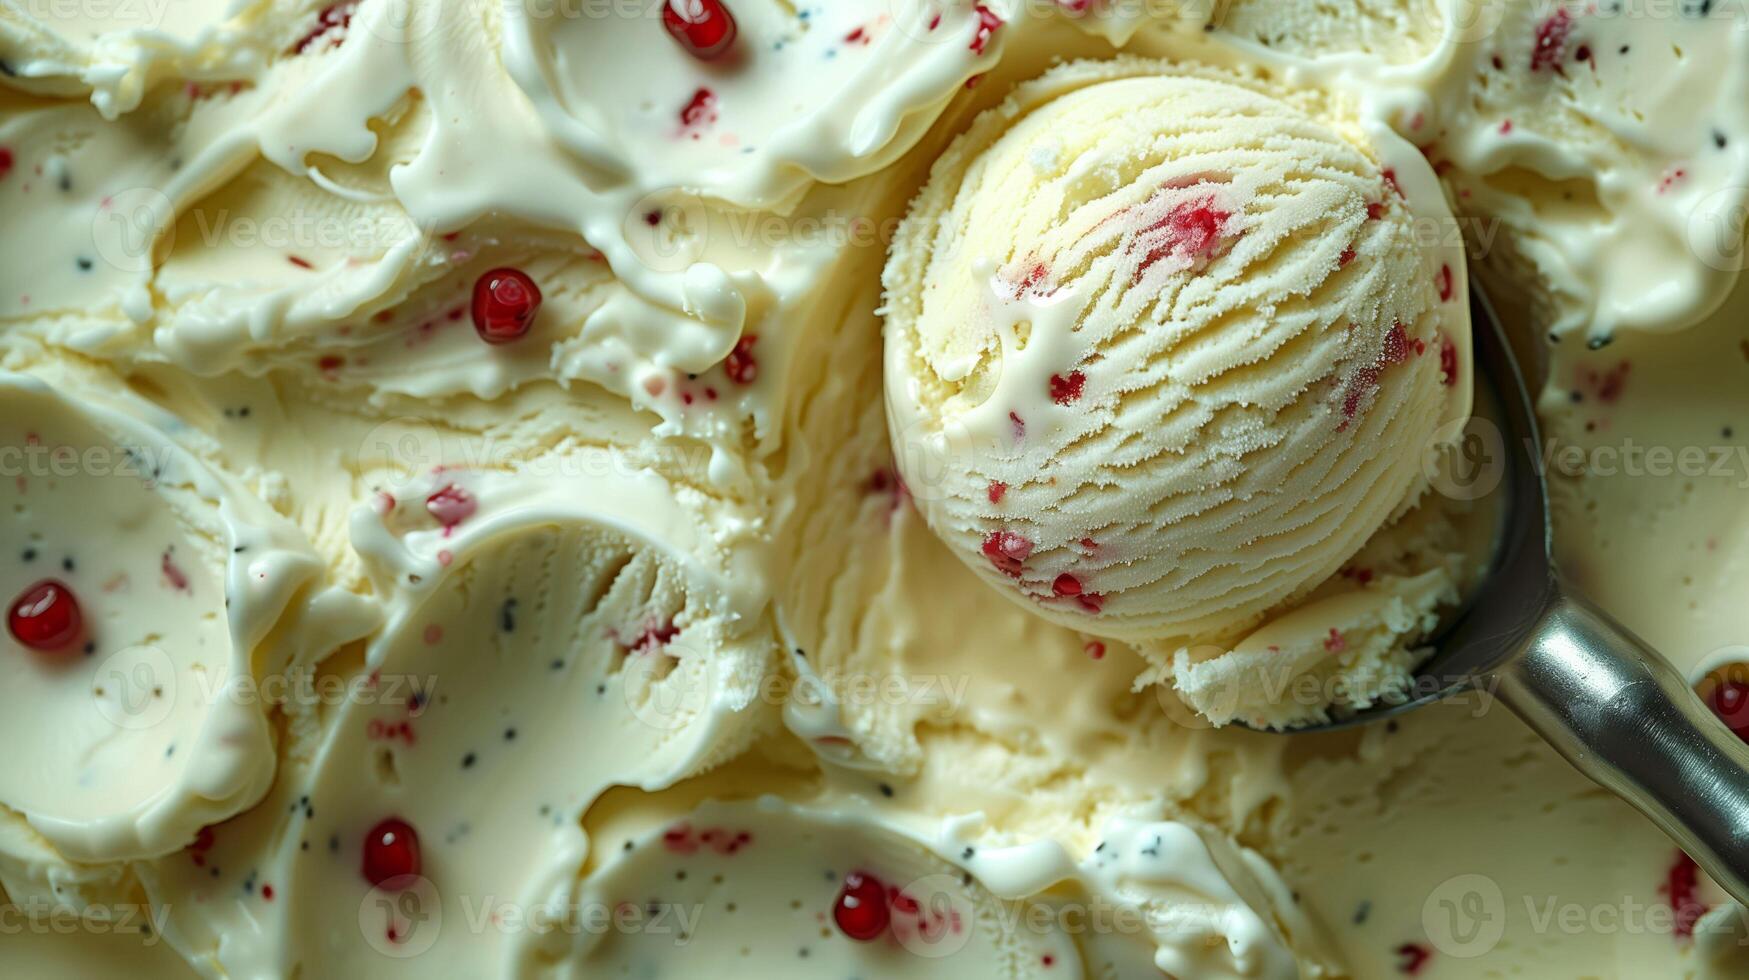 crémeux, rêveur, et tacheté avec fruit, cette vanille la glace crème est pur délice photo